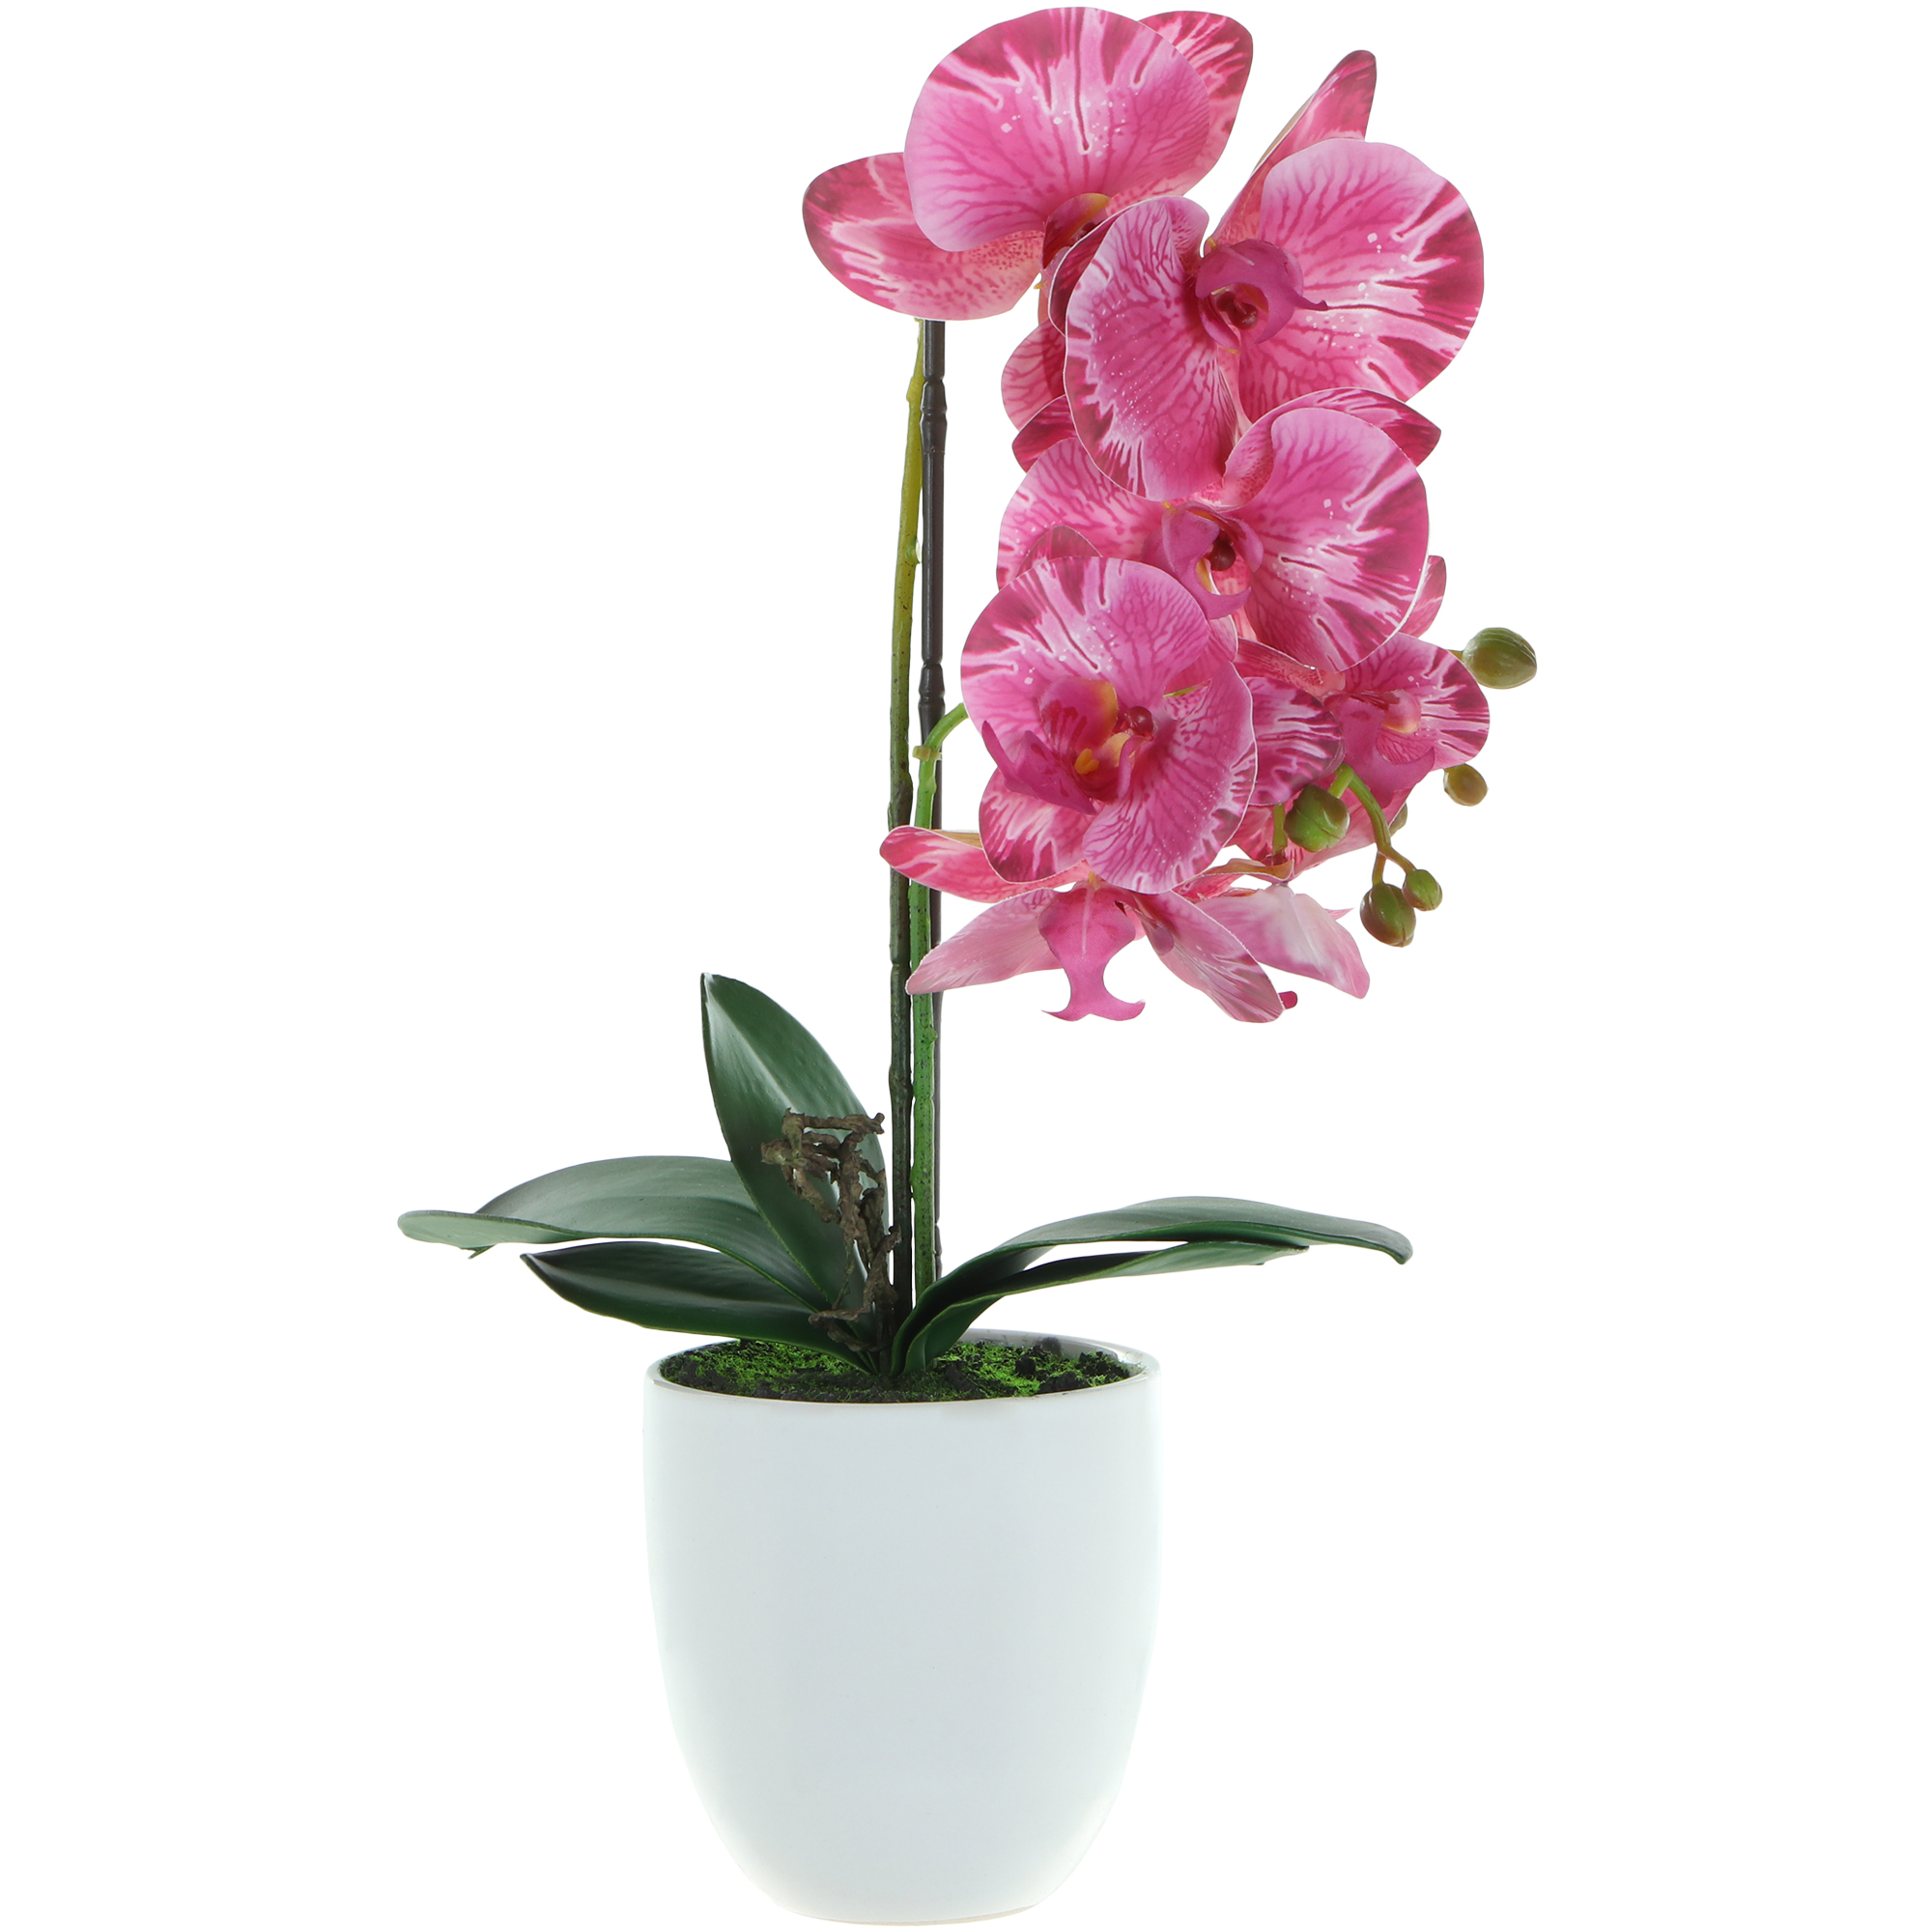 Цветок искусственный в горшке Fuzhou Light орхидея 2 цвета 54 см цветок искусственный орхидея в горшке 2 цвета 54 см